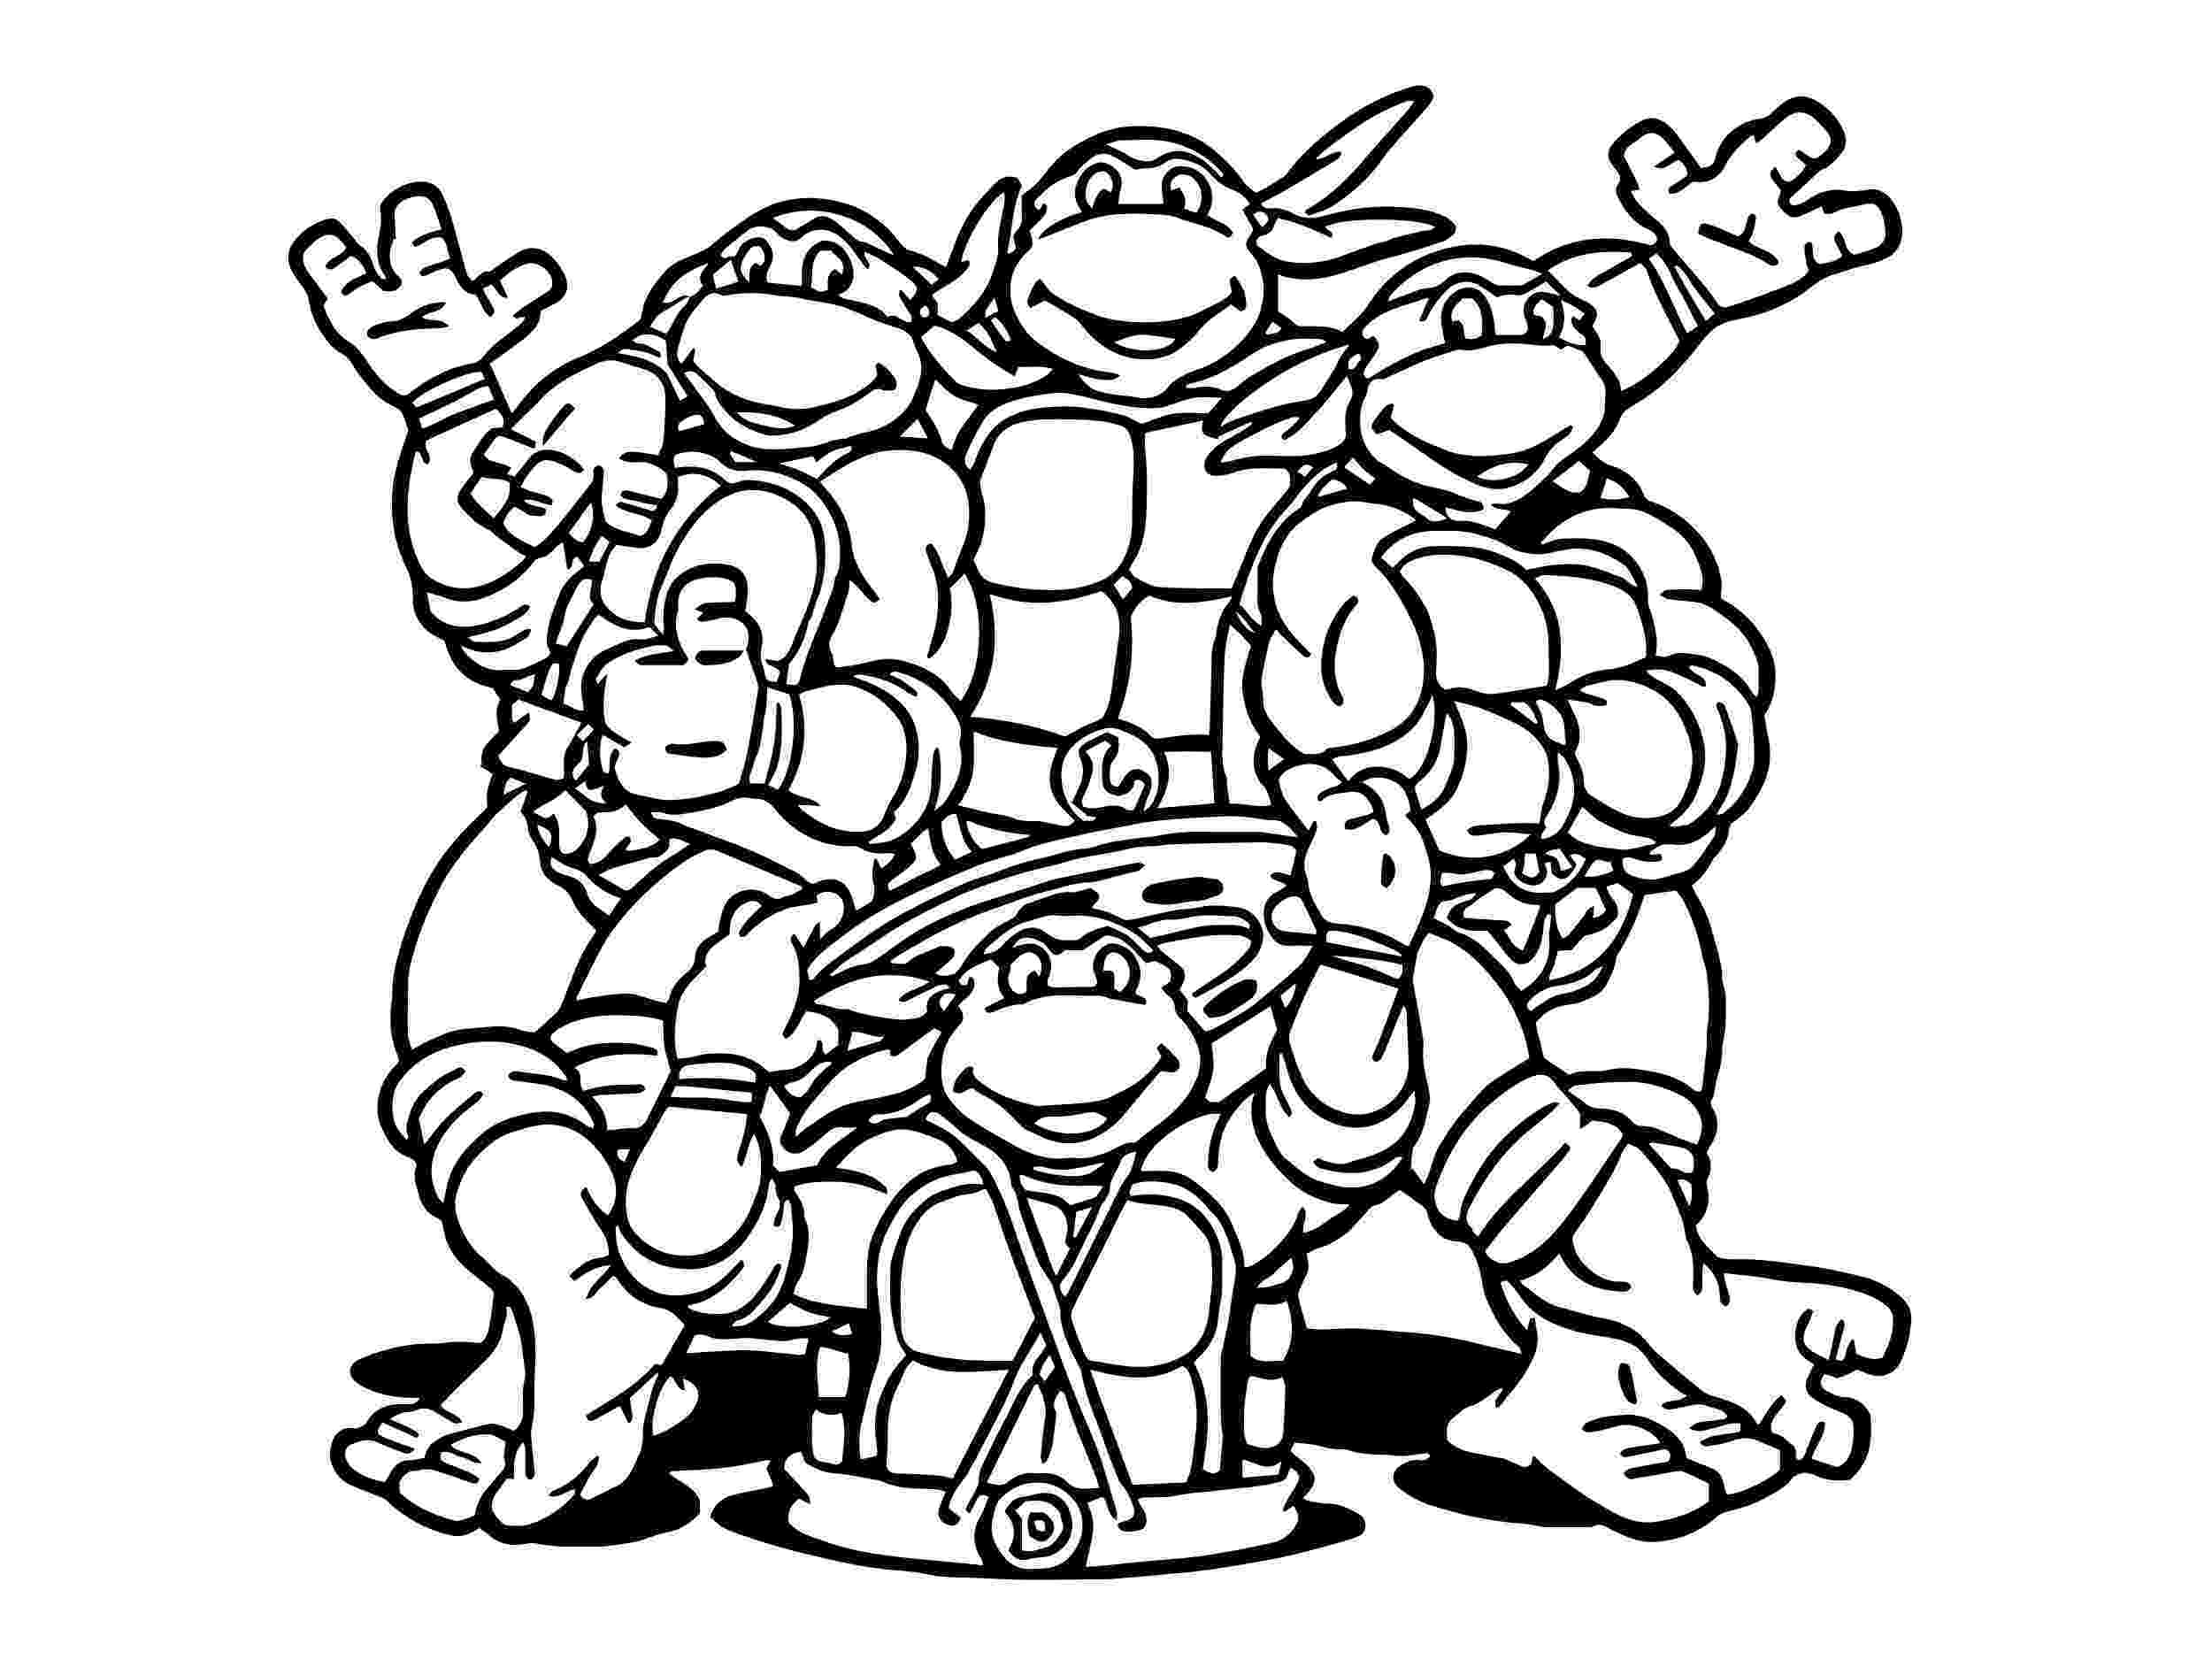 ninja turtles coloring pages to print teenage mutant ninja turtles coloring pages print them ninja coloring print turtles to pages 